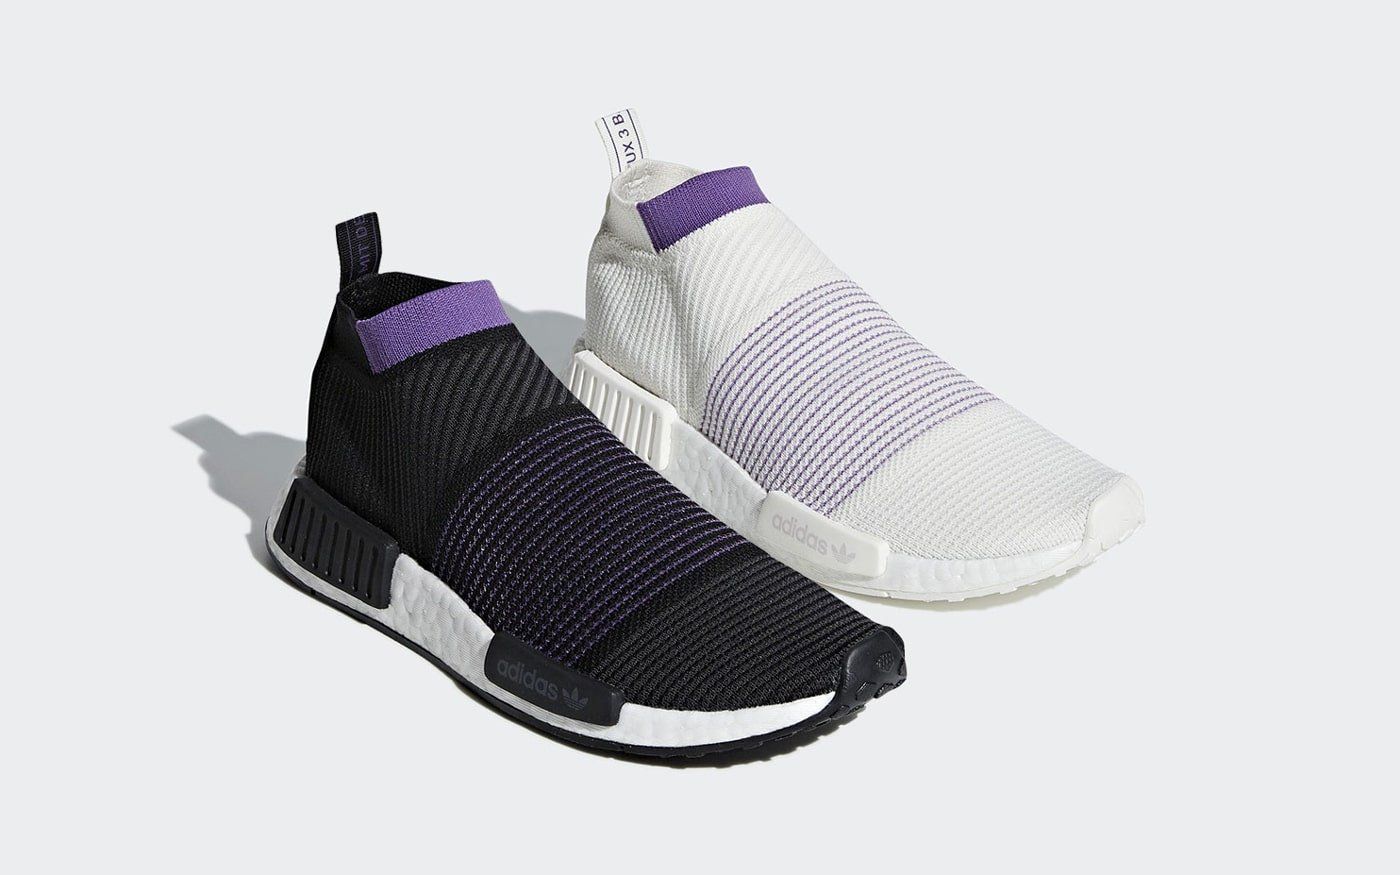 purple adidas socks